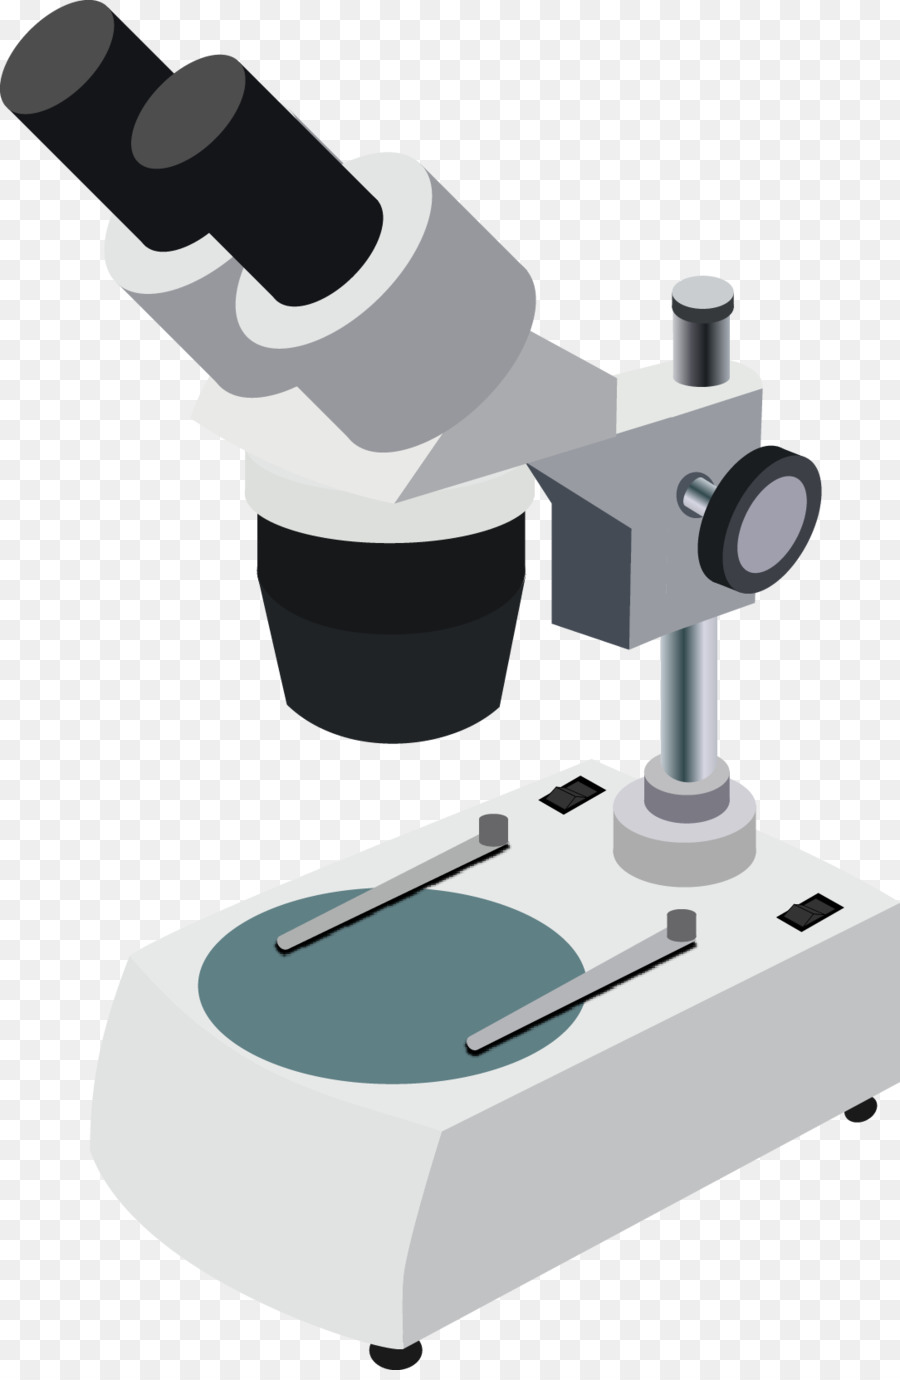 Microscopio Clip art - vettore microscopio